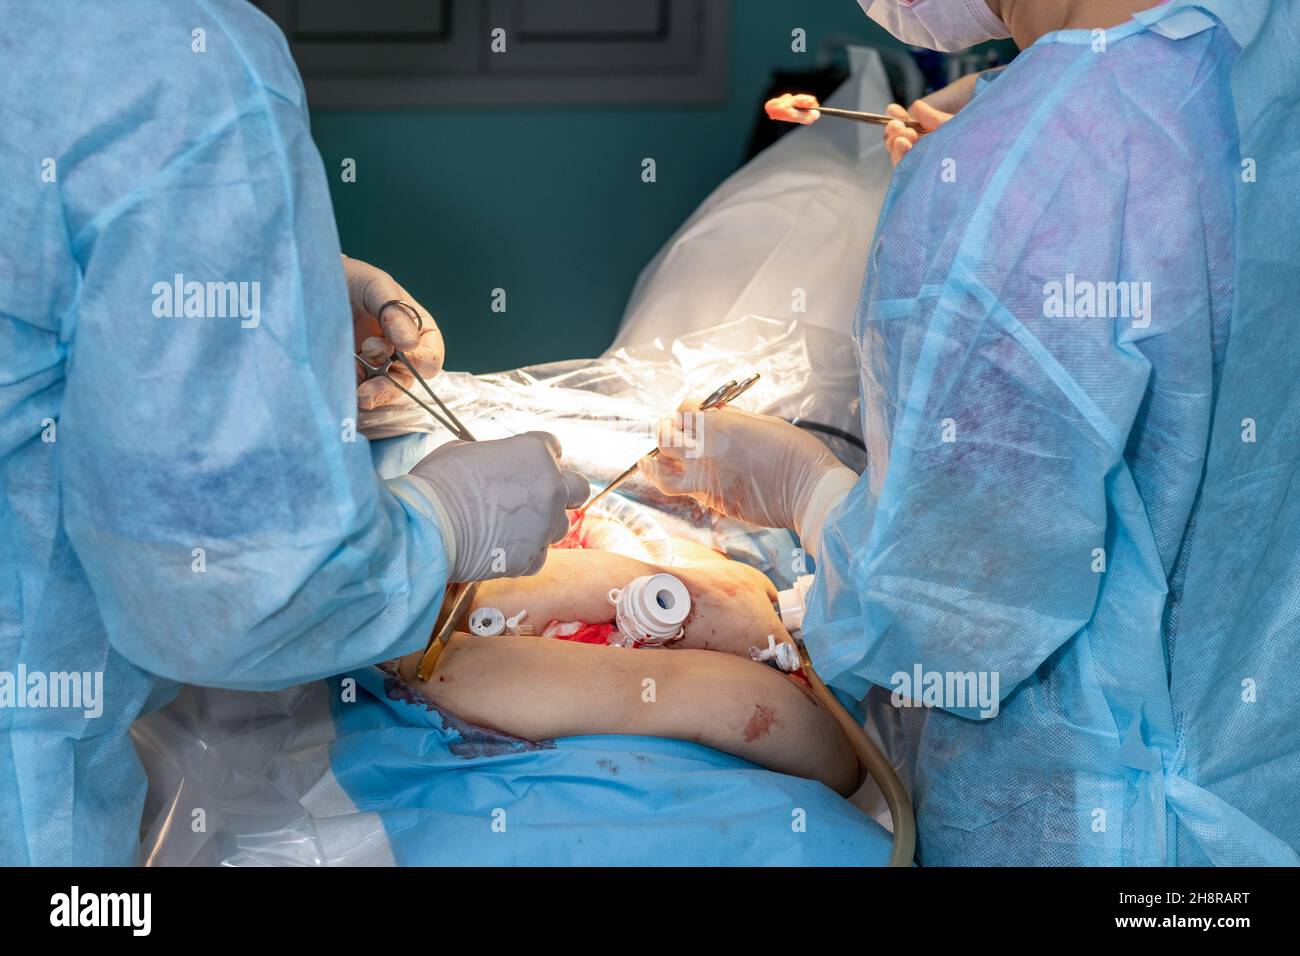 Il primo piano delle mani di un chirurgo in guanti sterili lavora con strumenti medici durante un intervento chirurgico. Il medico utilizza una varietà di strumenti medici per eseguire l'intervento chirurgico. Foto Stock